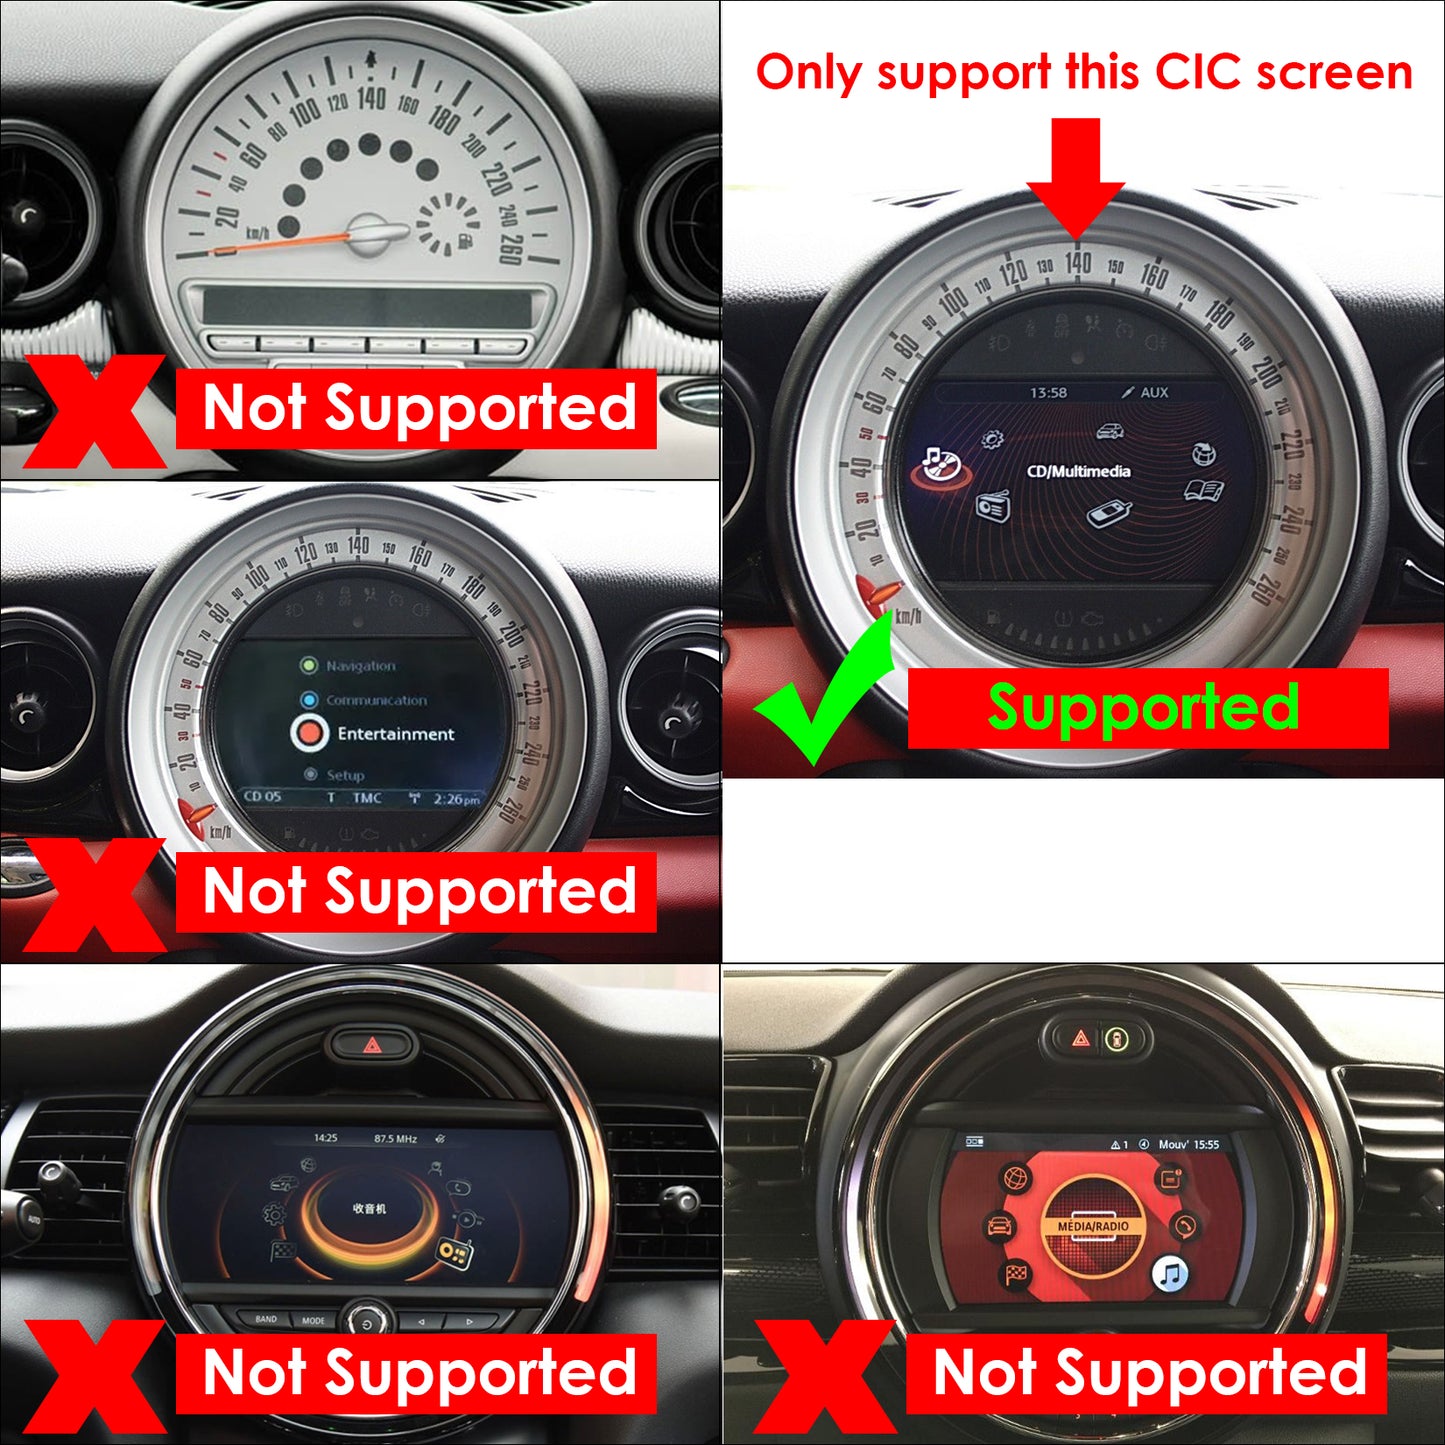 CarProKit Wireless CarPlay Android Auto AirPlay USB Mirroring Nachrüstsatz für Mini Cooper F54 F55 F56 F57 R58 R59 R60 R61 mit CIC-System 2010–2017 